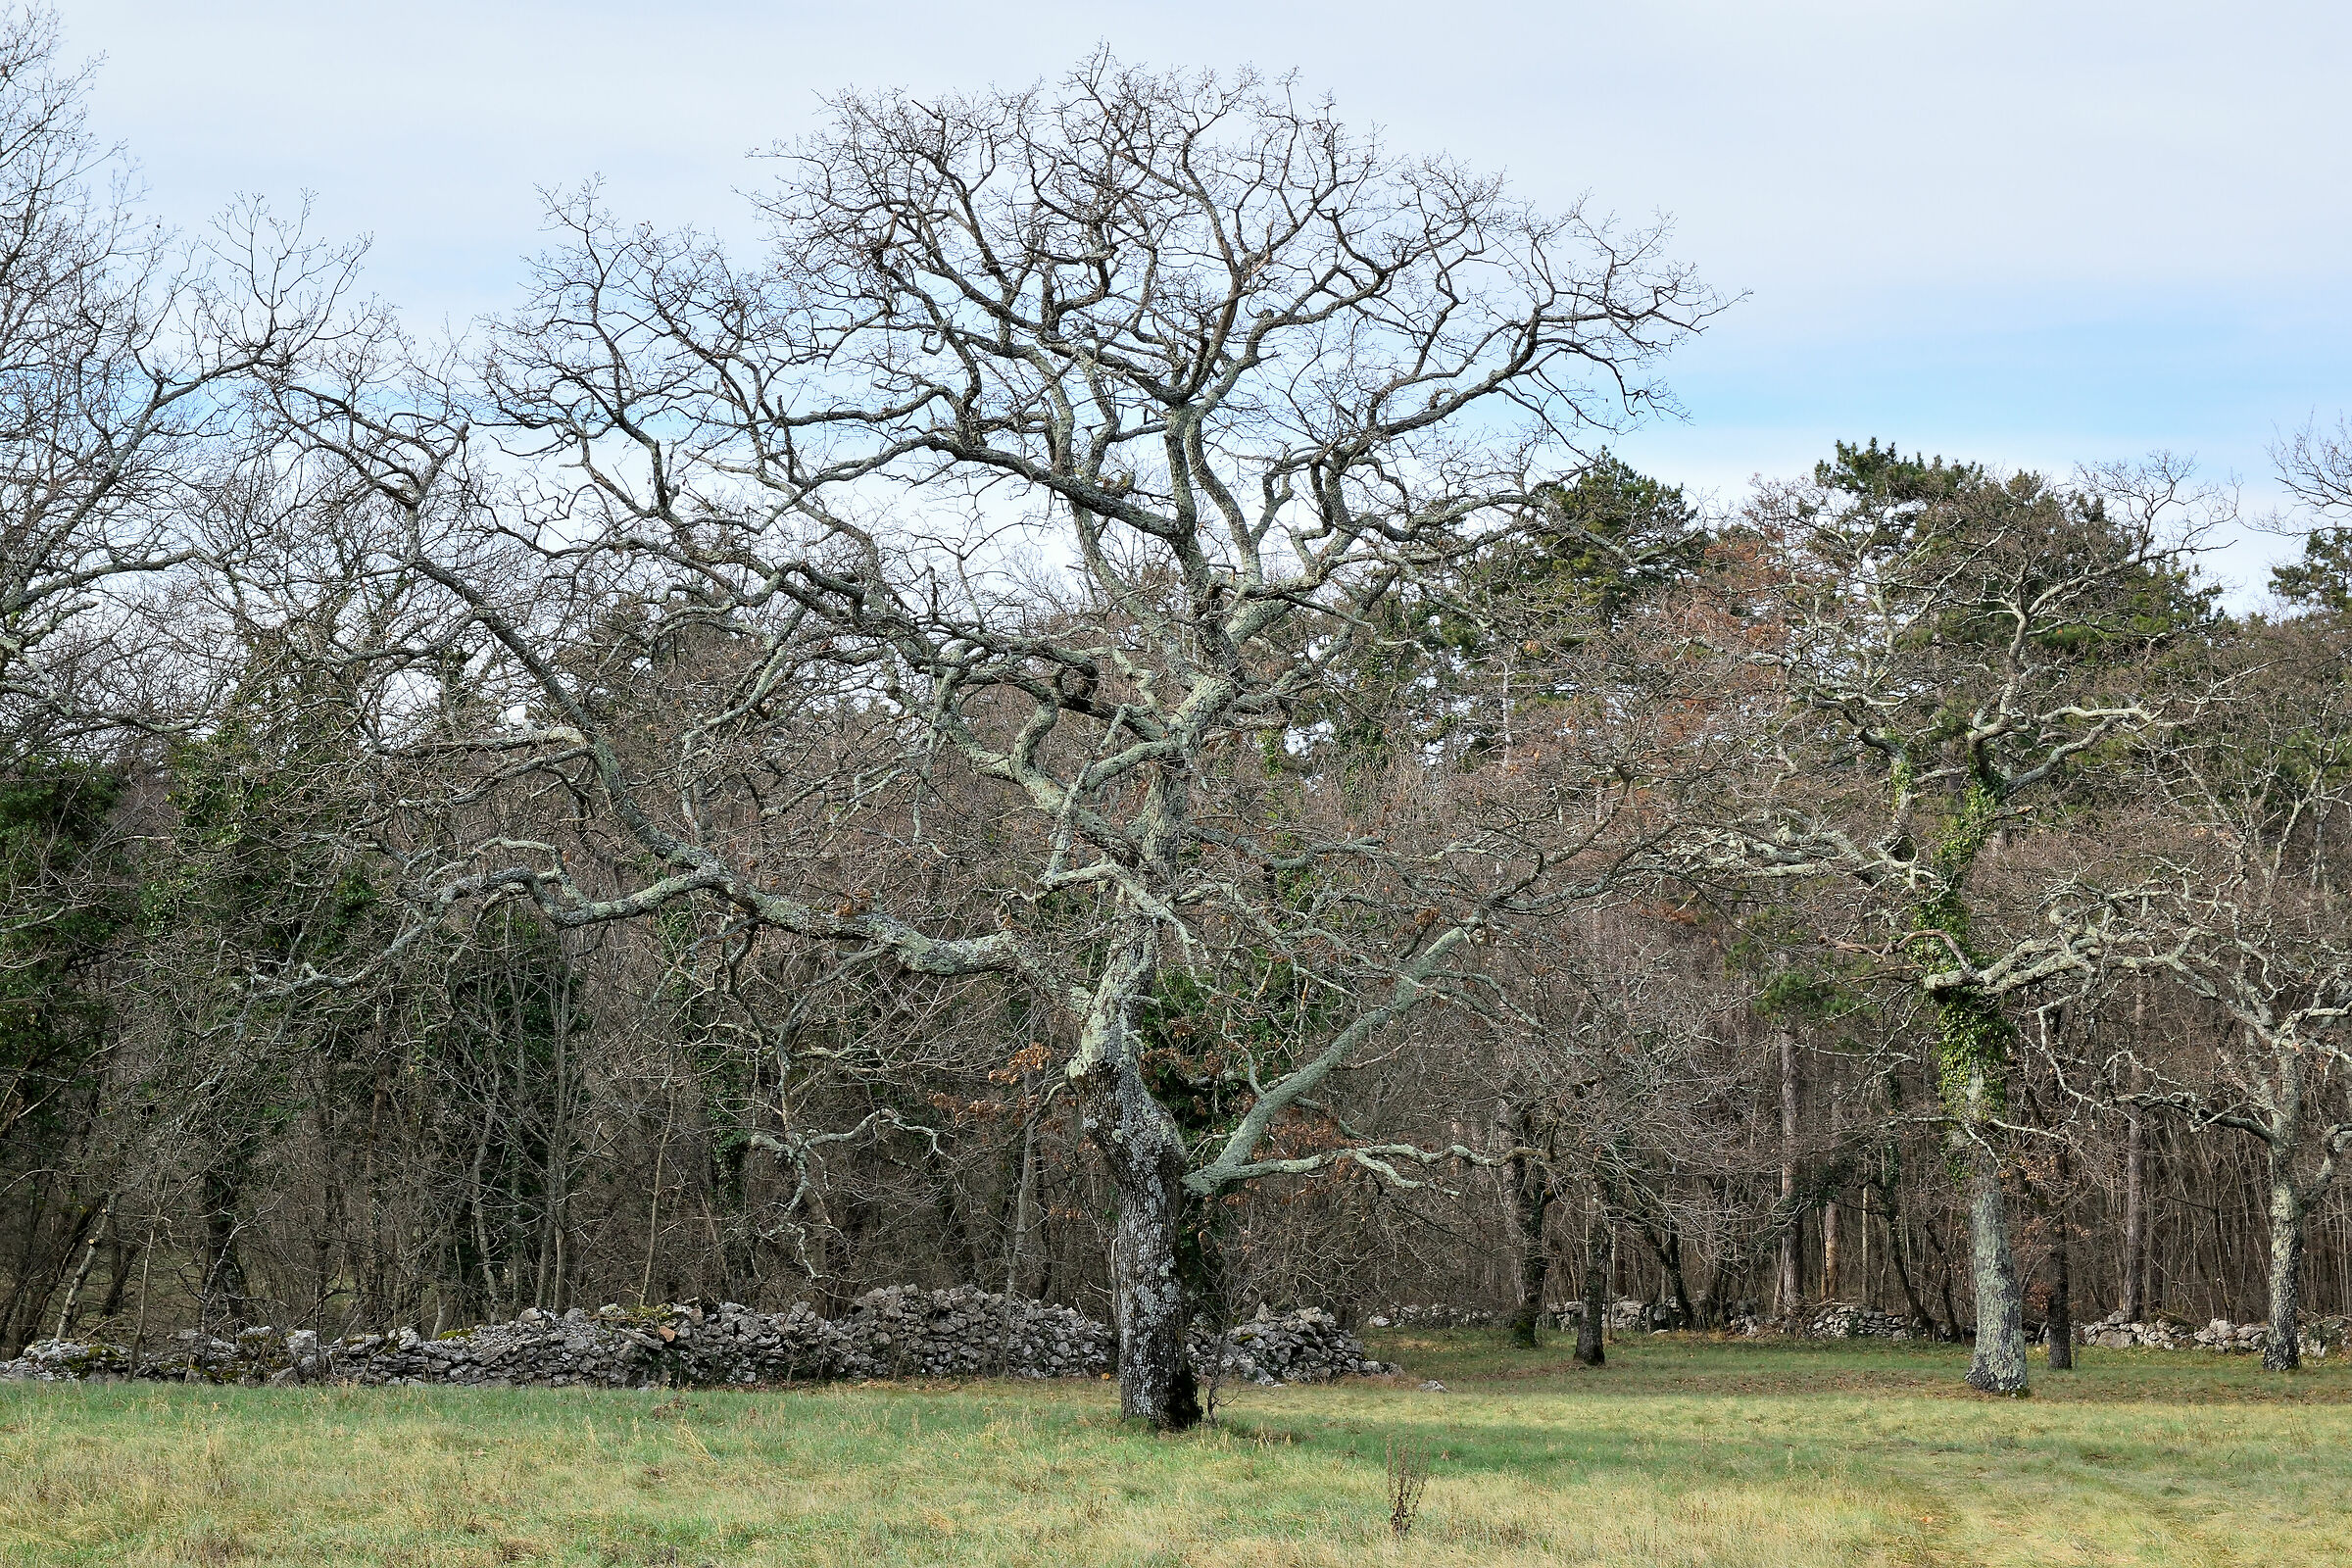 Licheni-covered oak...